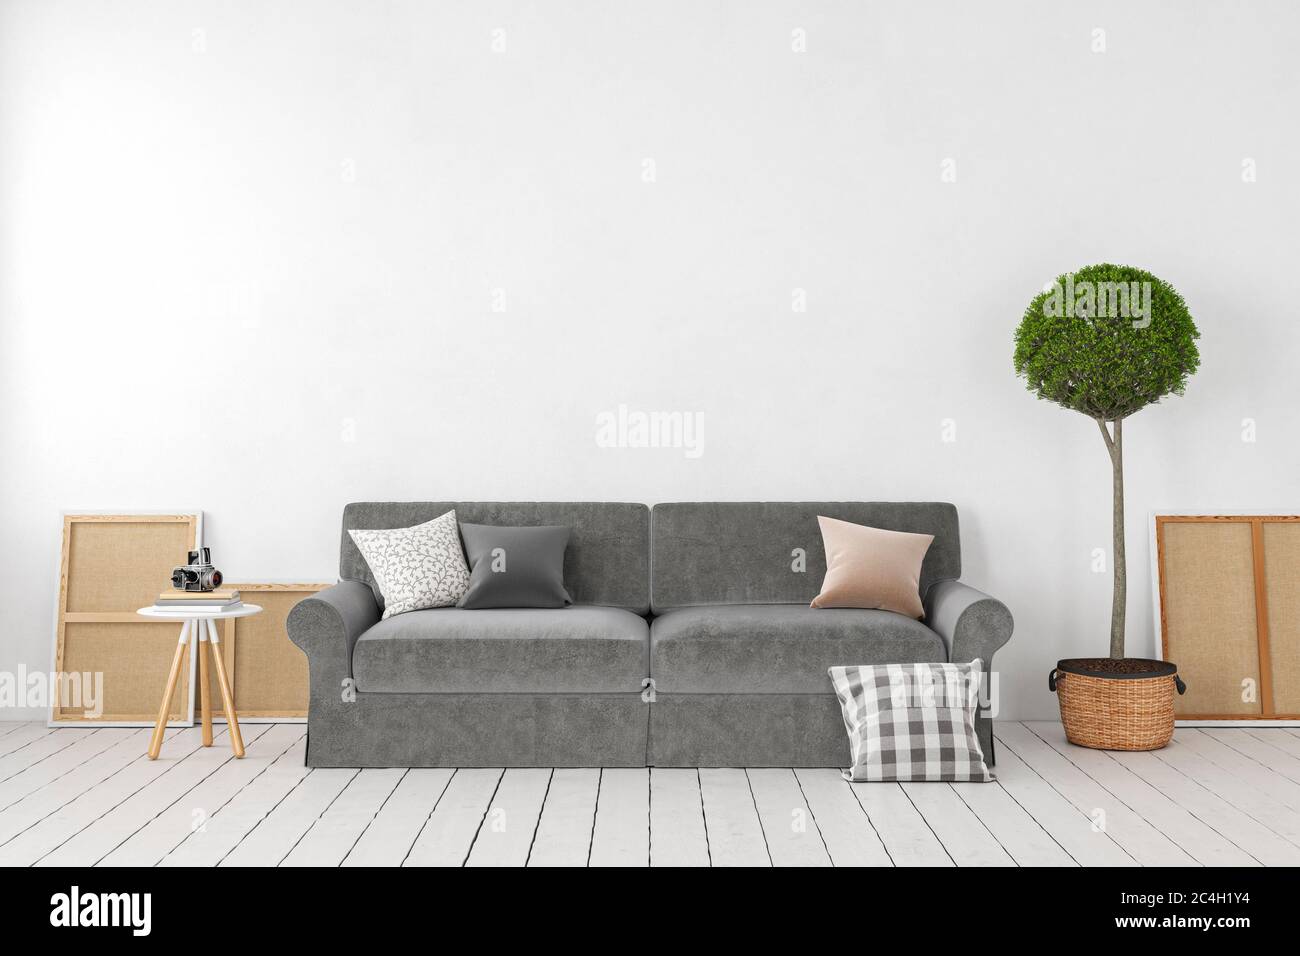 Interno bianco vuoto, parete vuota con divano, pianta, albero, cuscini. mockup dell'illustrazione di rendering 3d Foto Stock